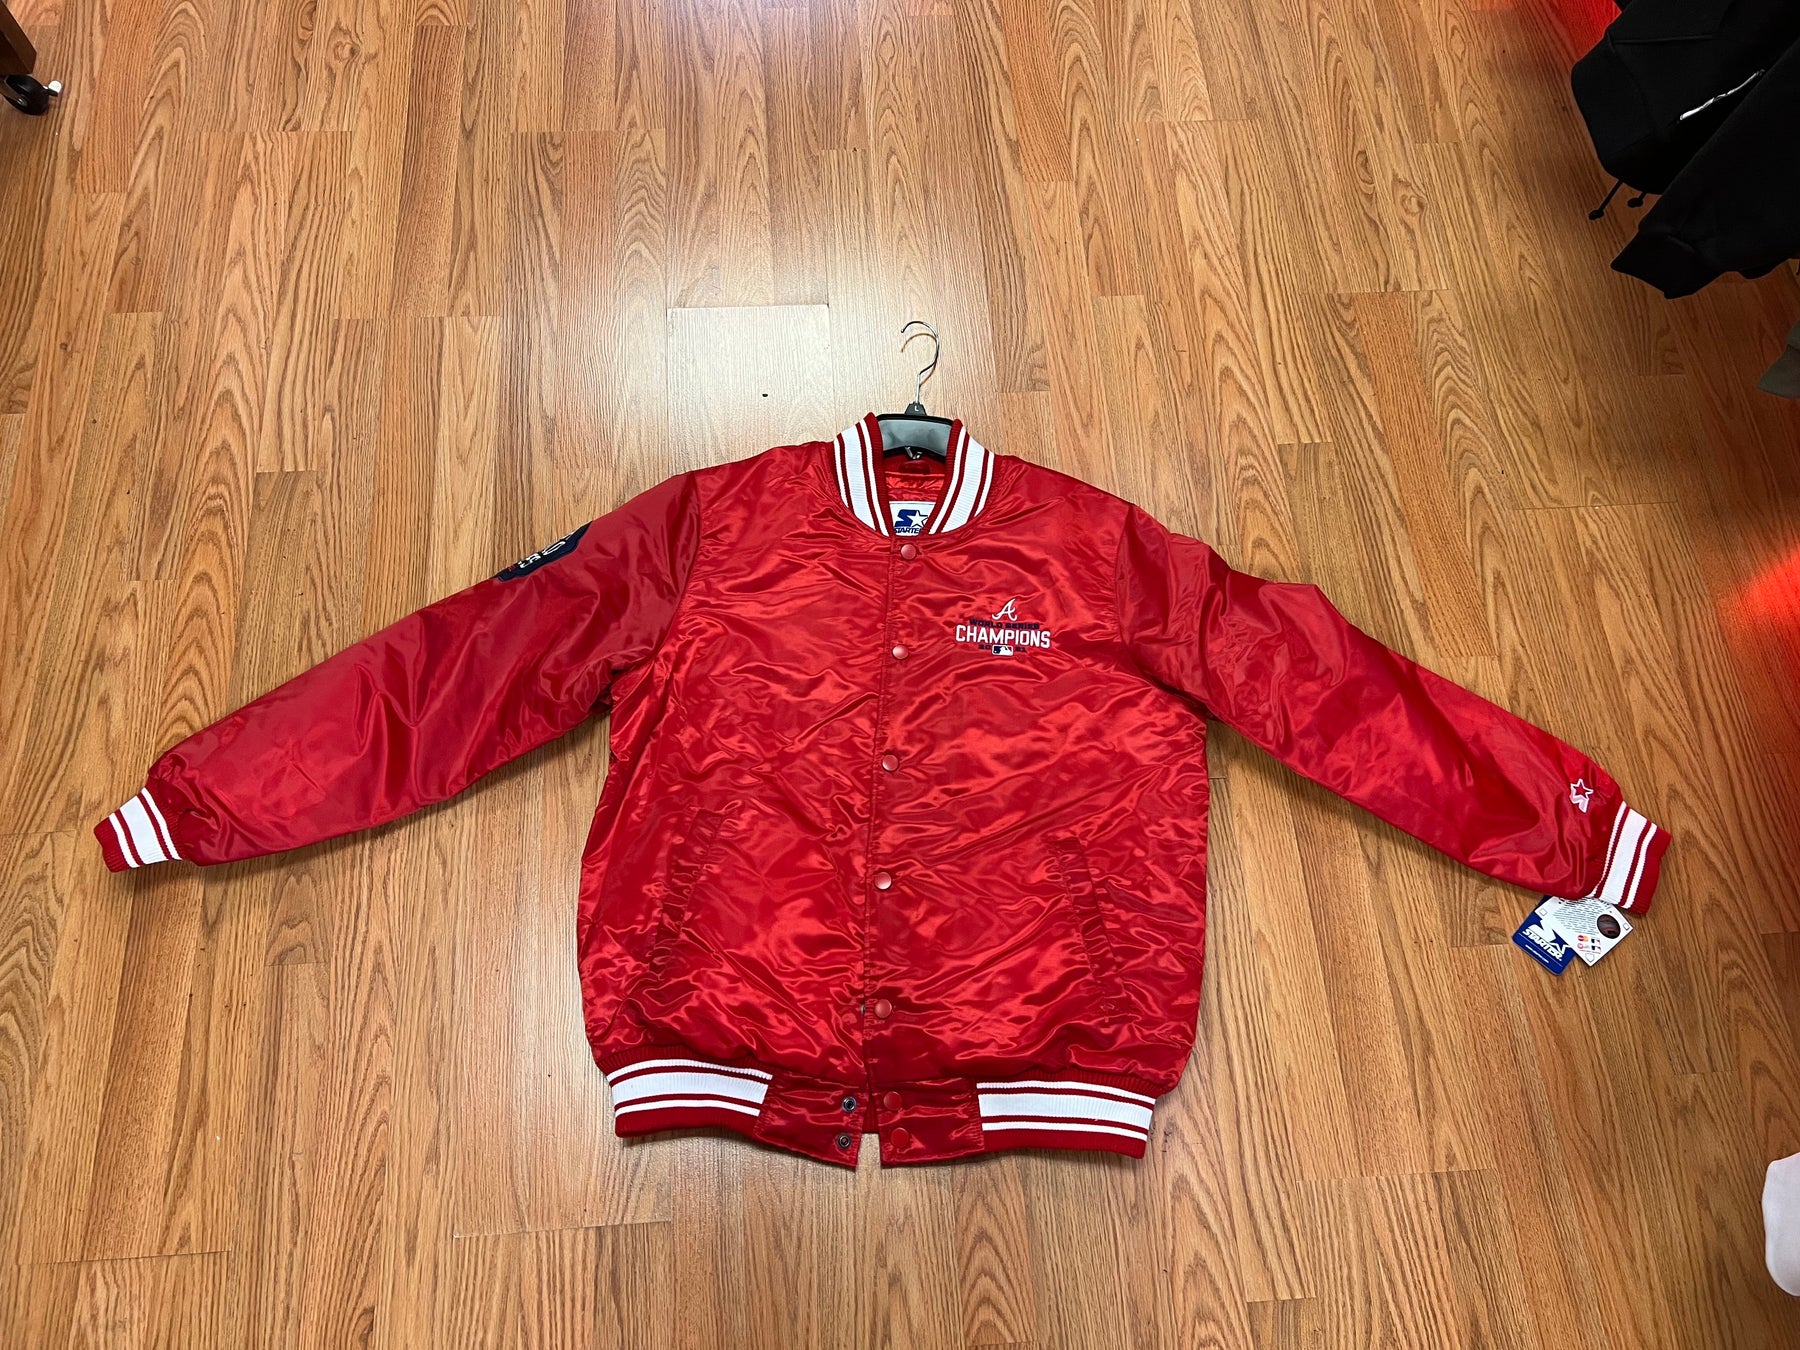 Vintage Atlanta Hawks Starter Jacket Sz XL